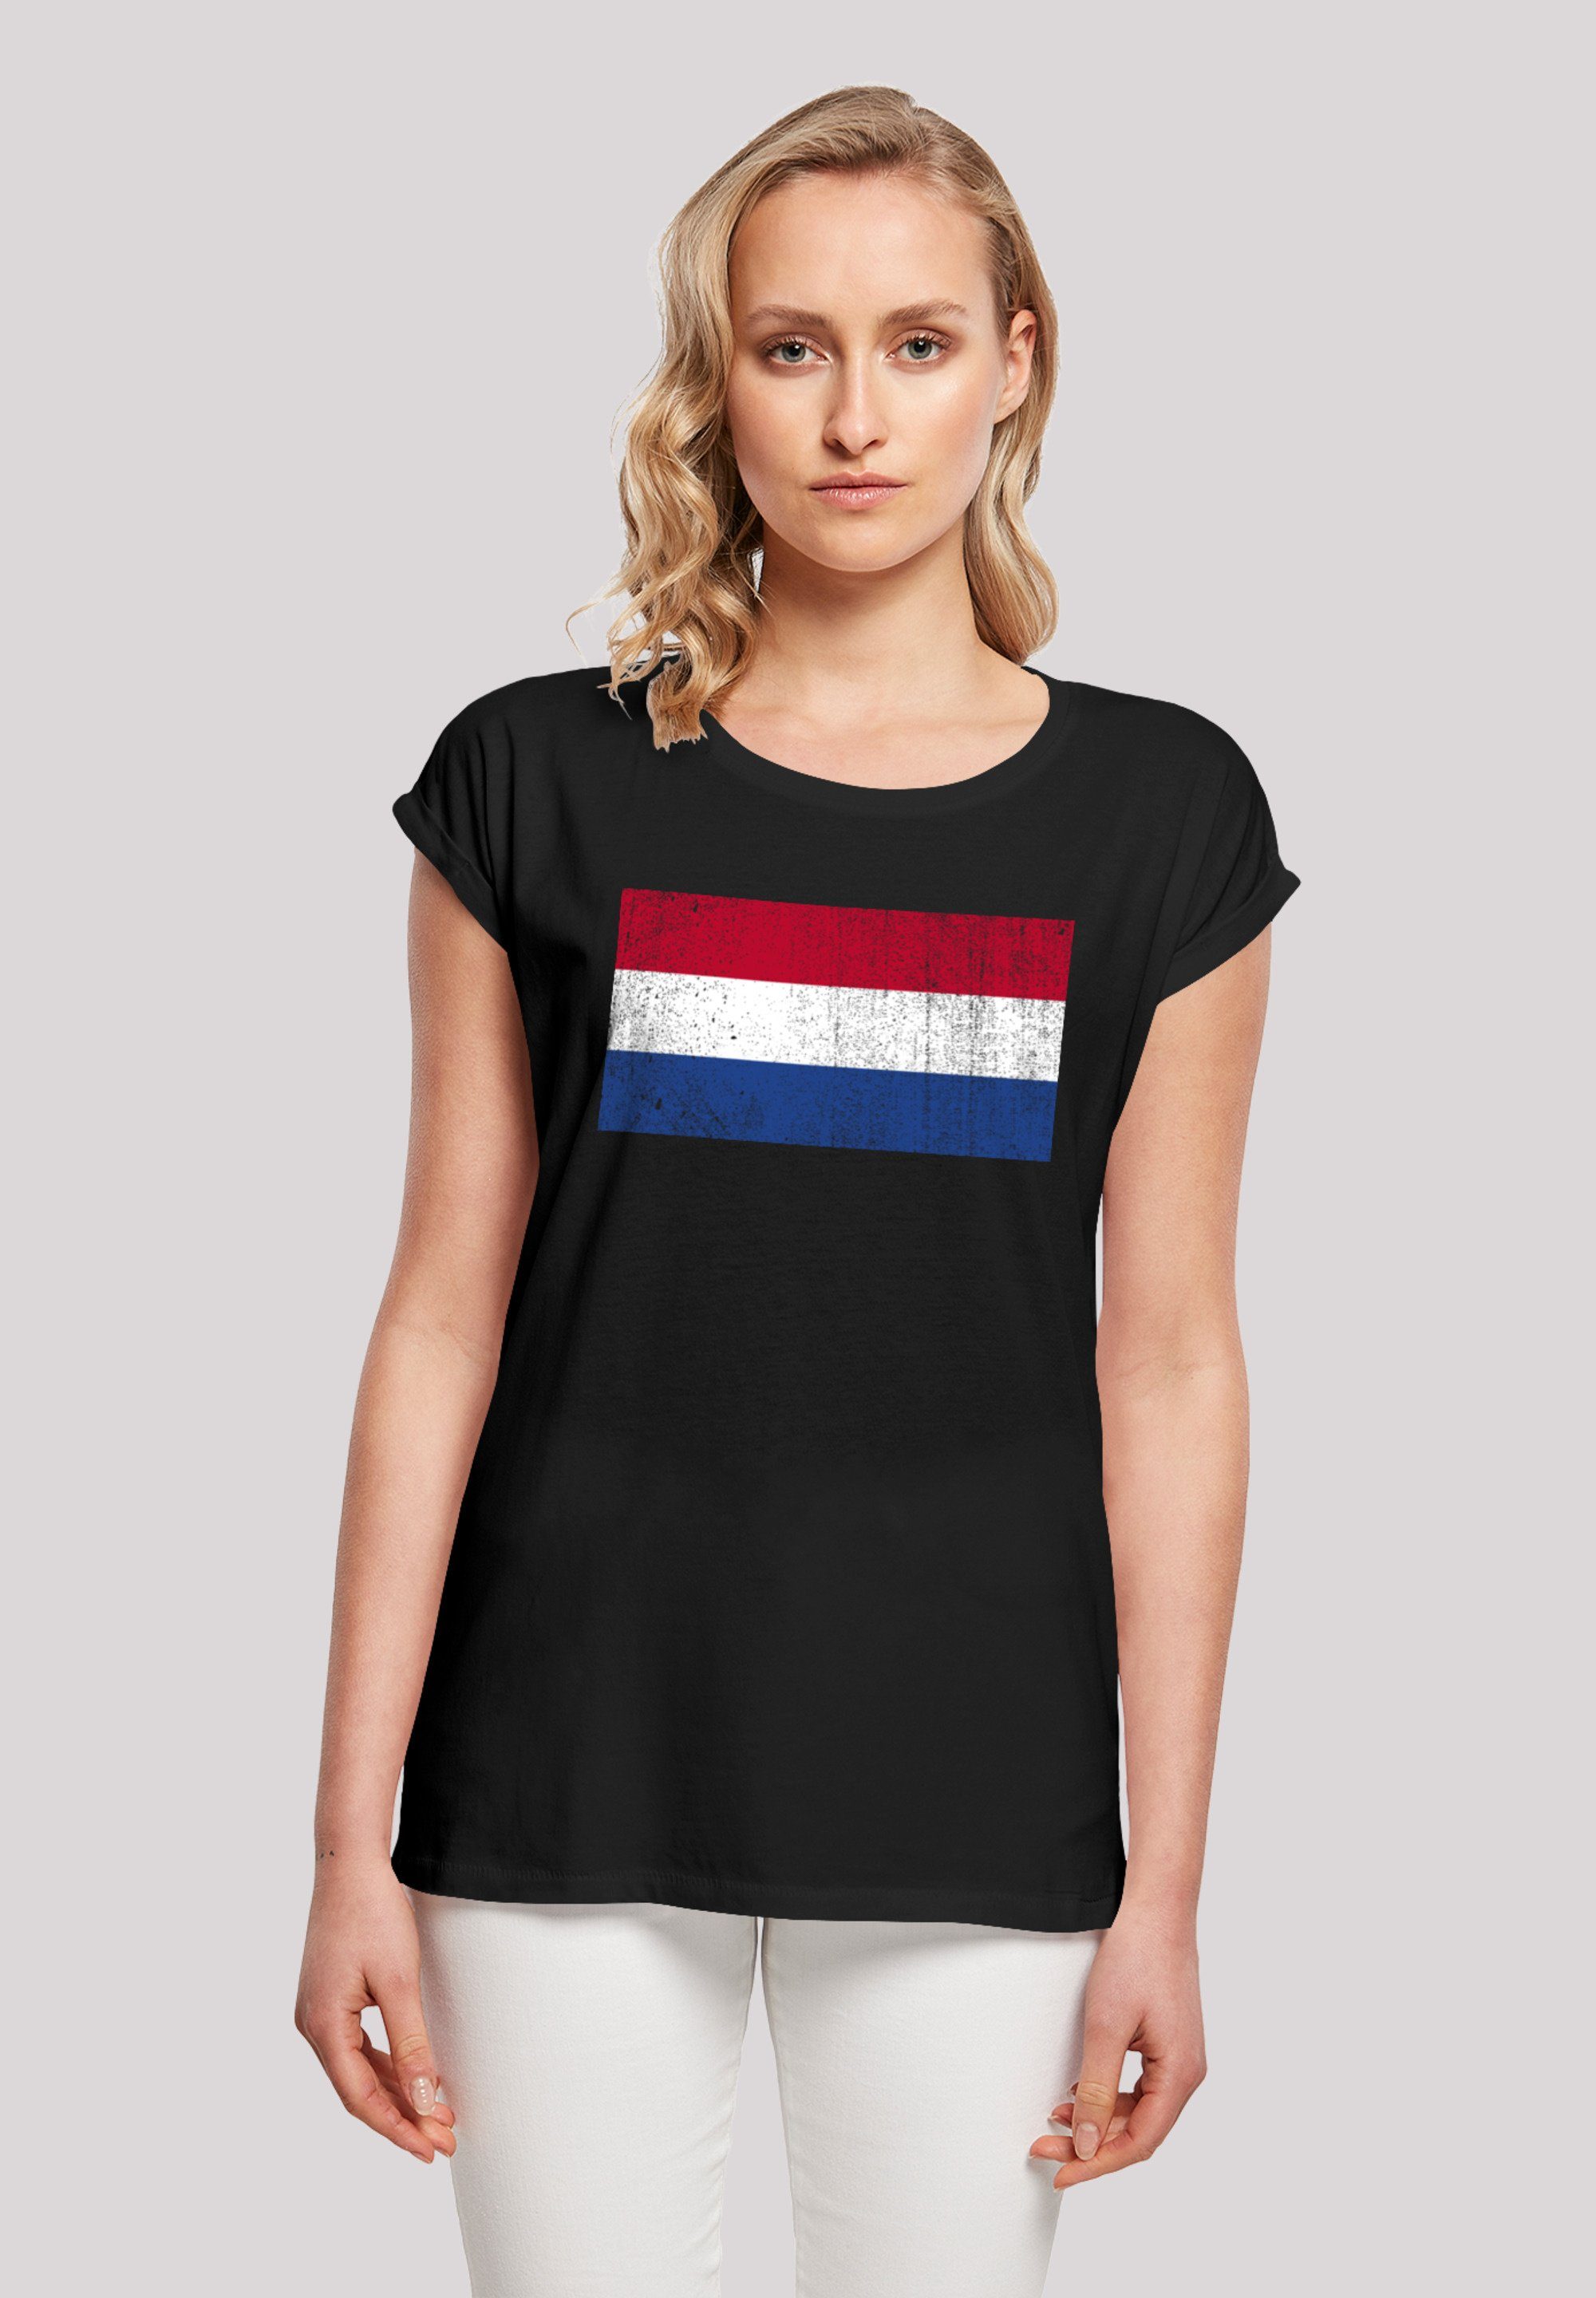 M Größe NIederlande Holland cm Print, Netherlands Flagge groß F4NT4STIC Model trägt ist Das 170 distressed und T-Shirt